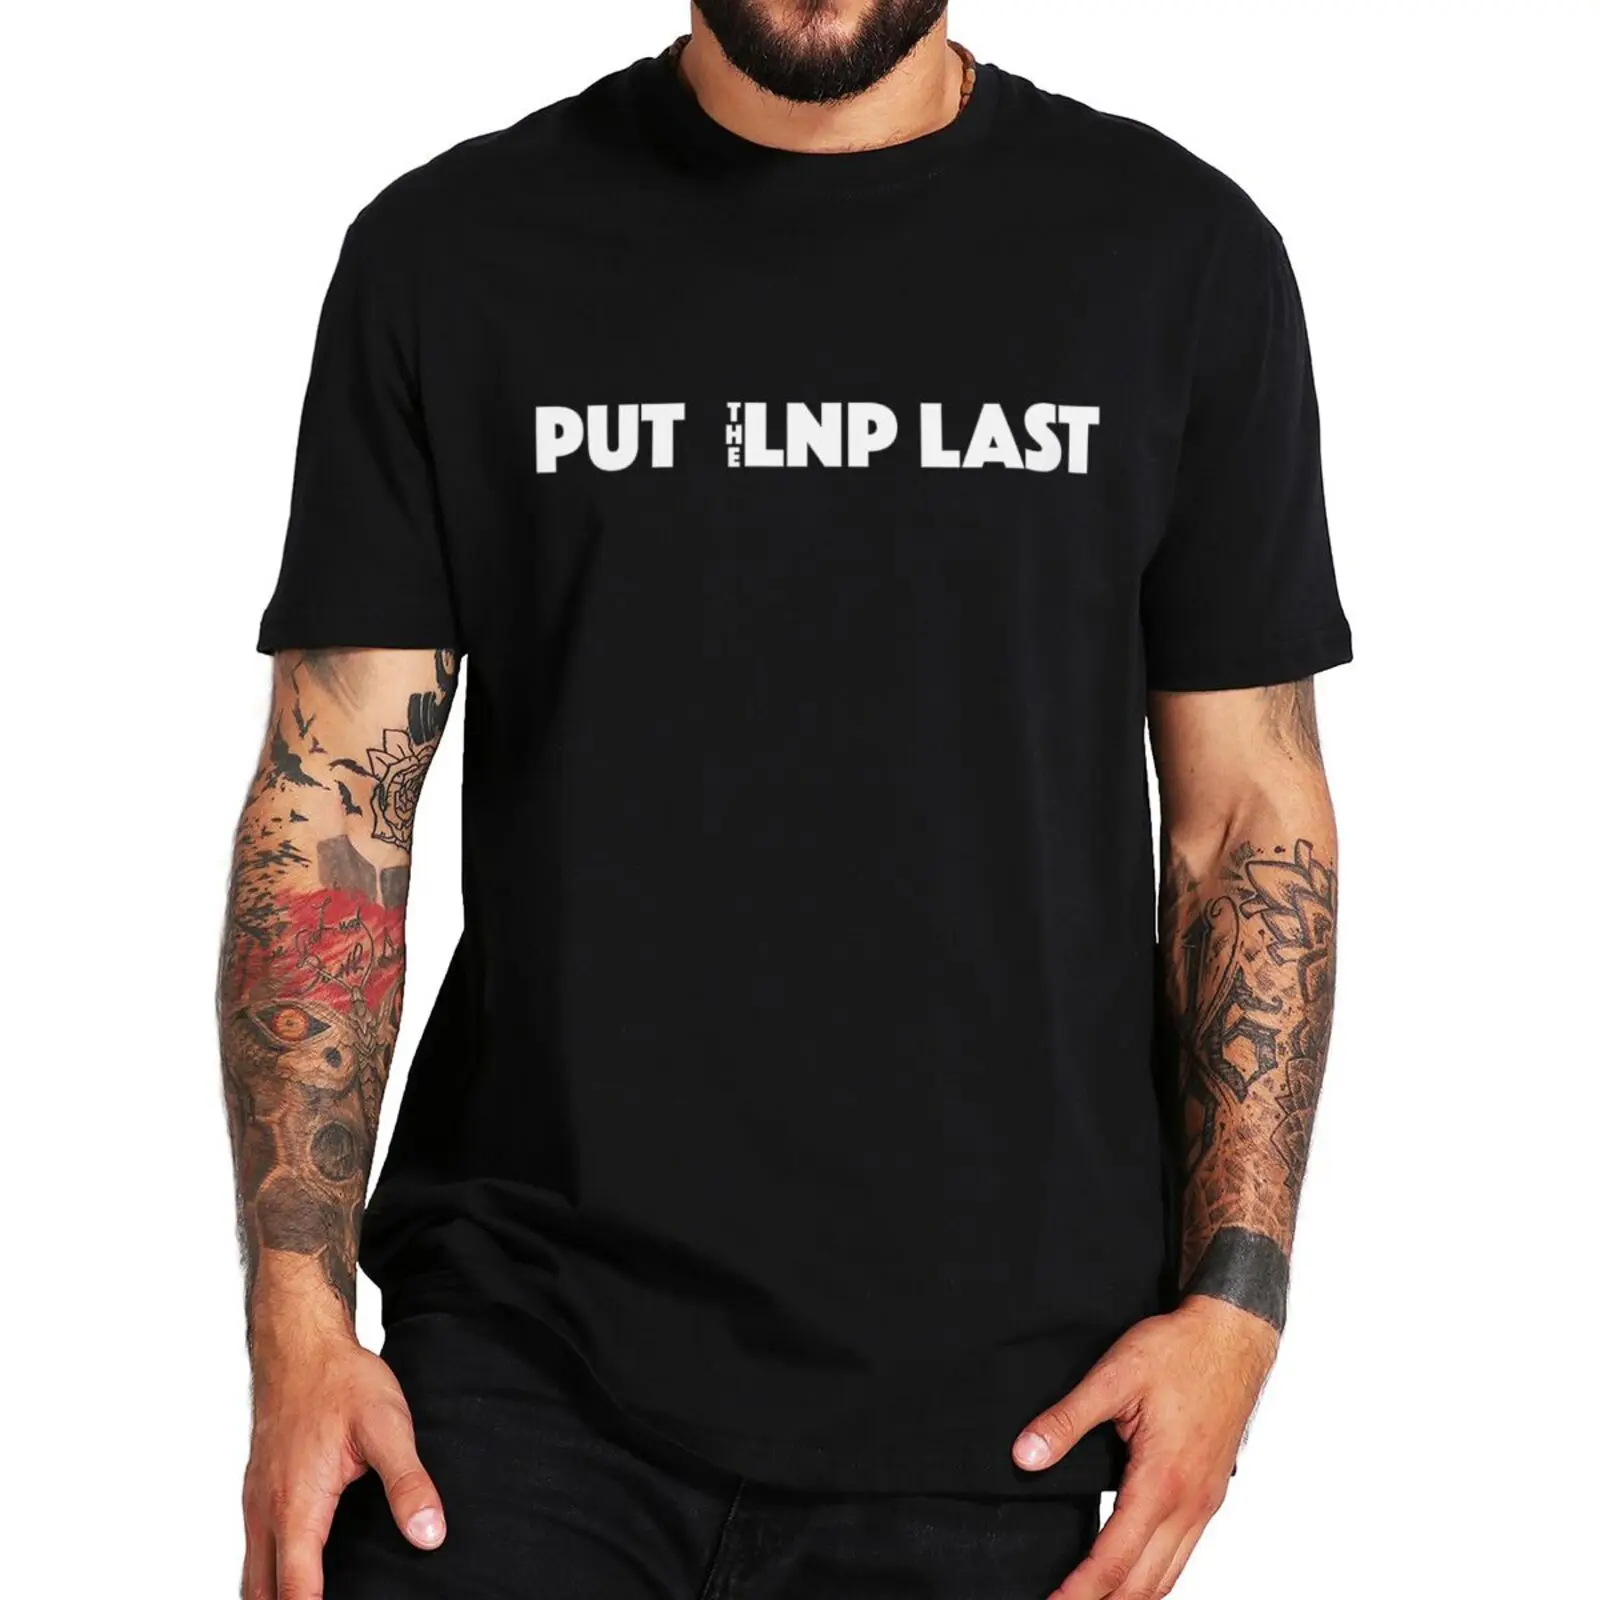 Put The LNP Last Essential T Shirt 2022 Australian Federal Election Sarcasm Tshirt Oversize 100% Cotton Men's Casual T-Shirt